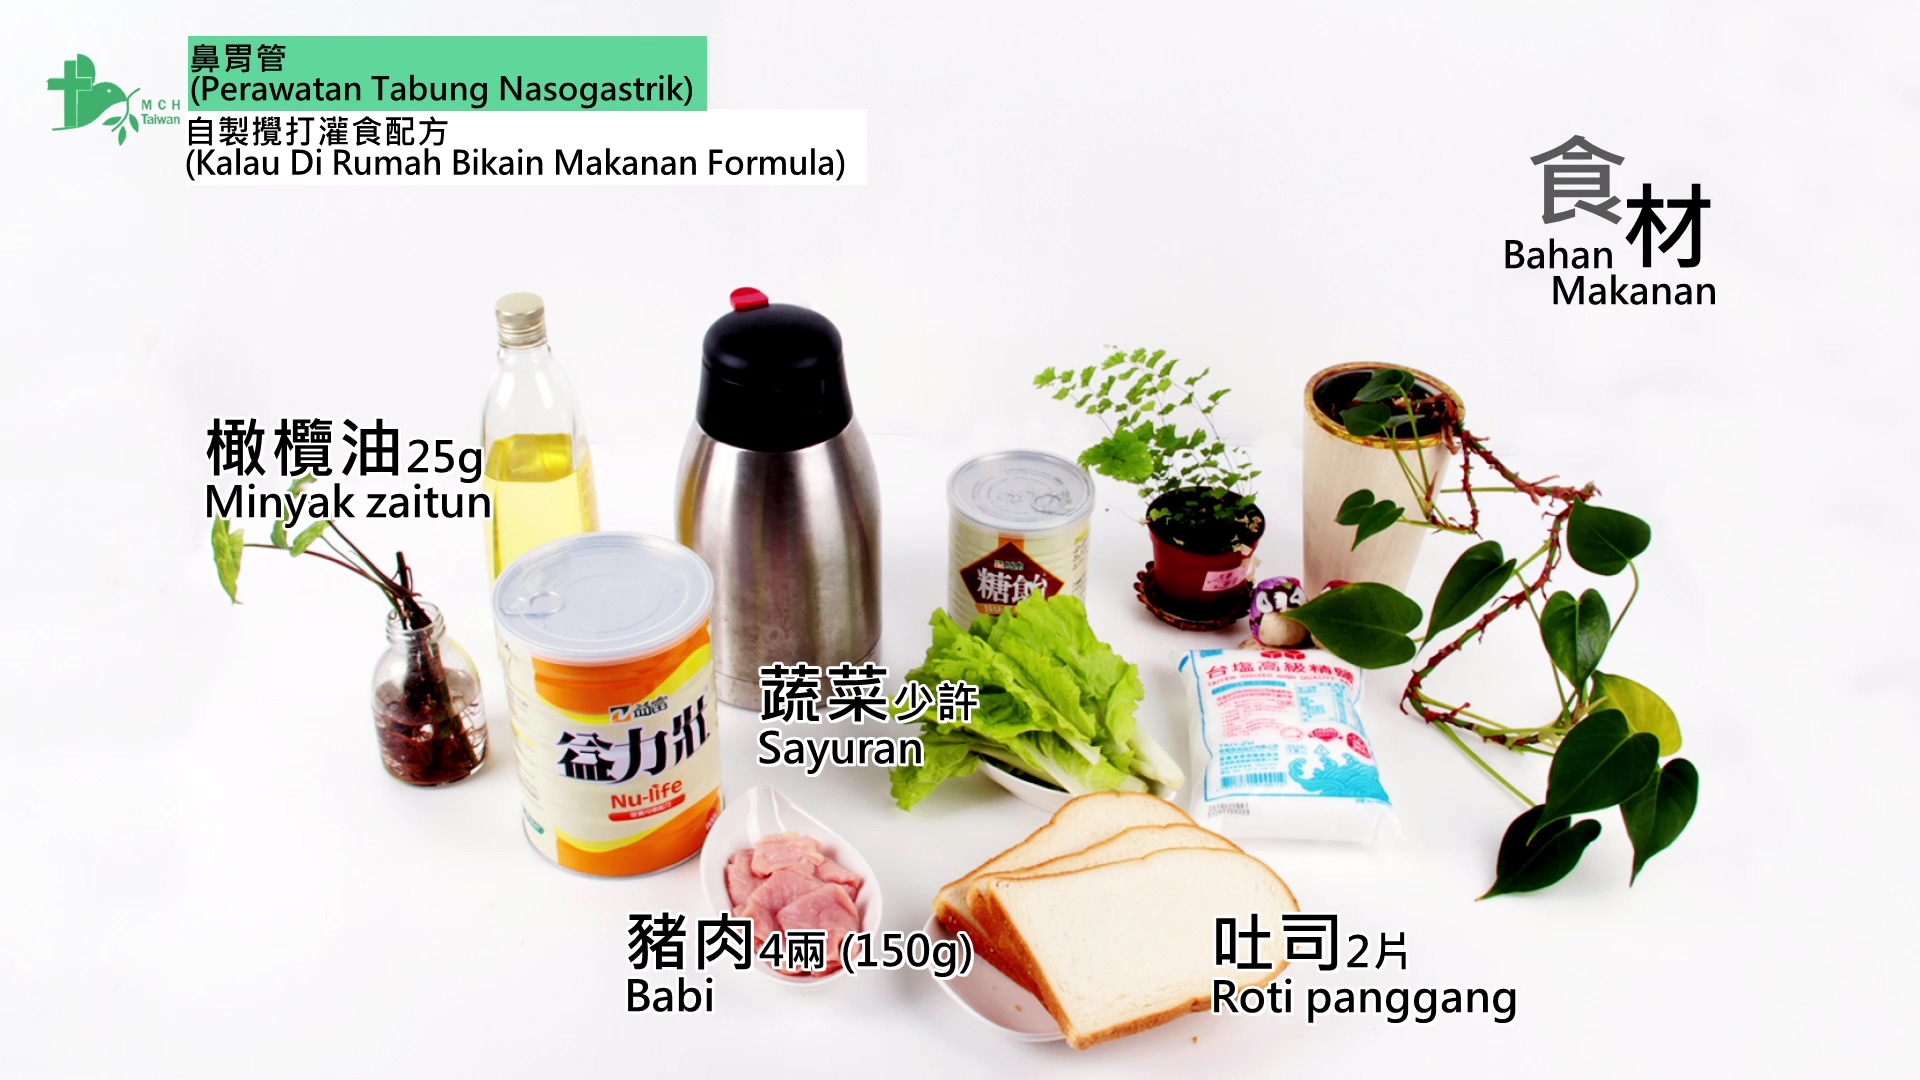 居家照顧指導系列-鼻胃管(印尼文版)文章照片